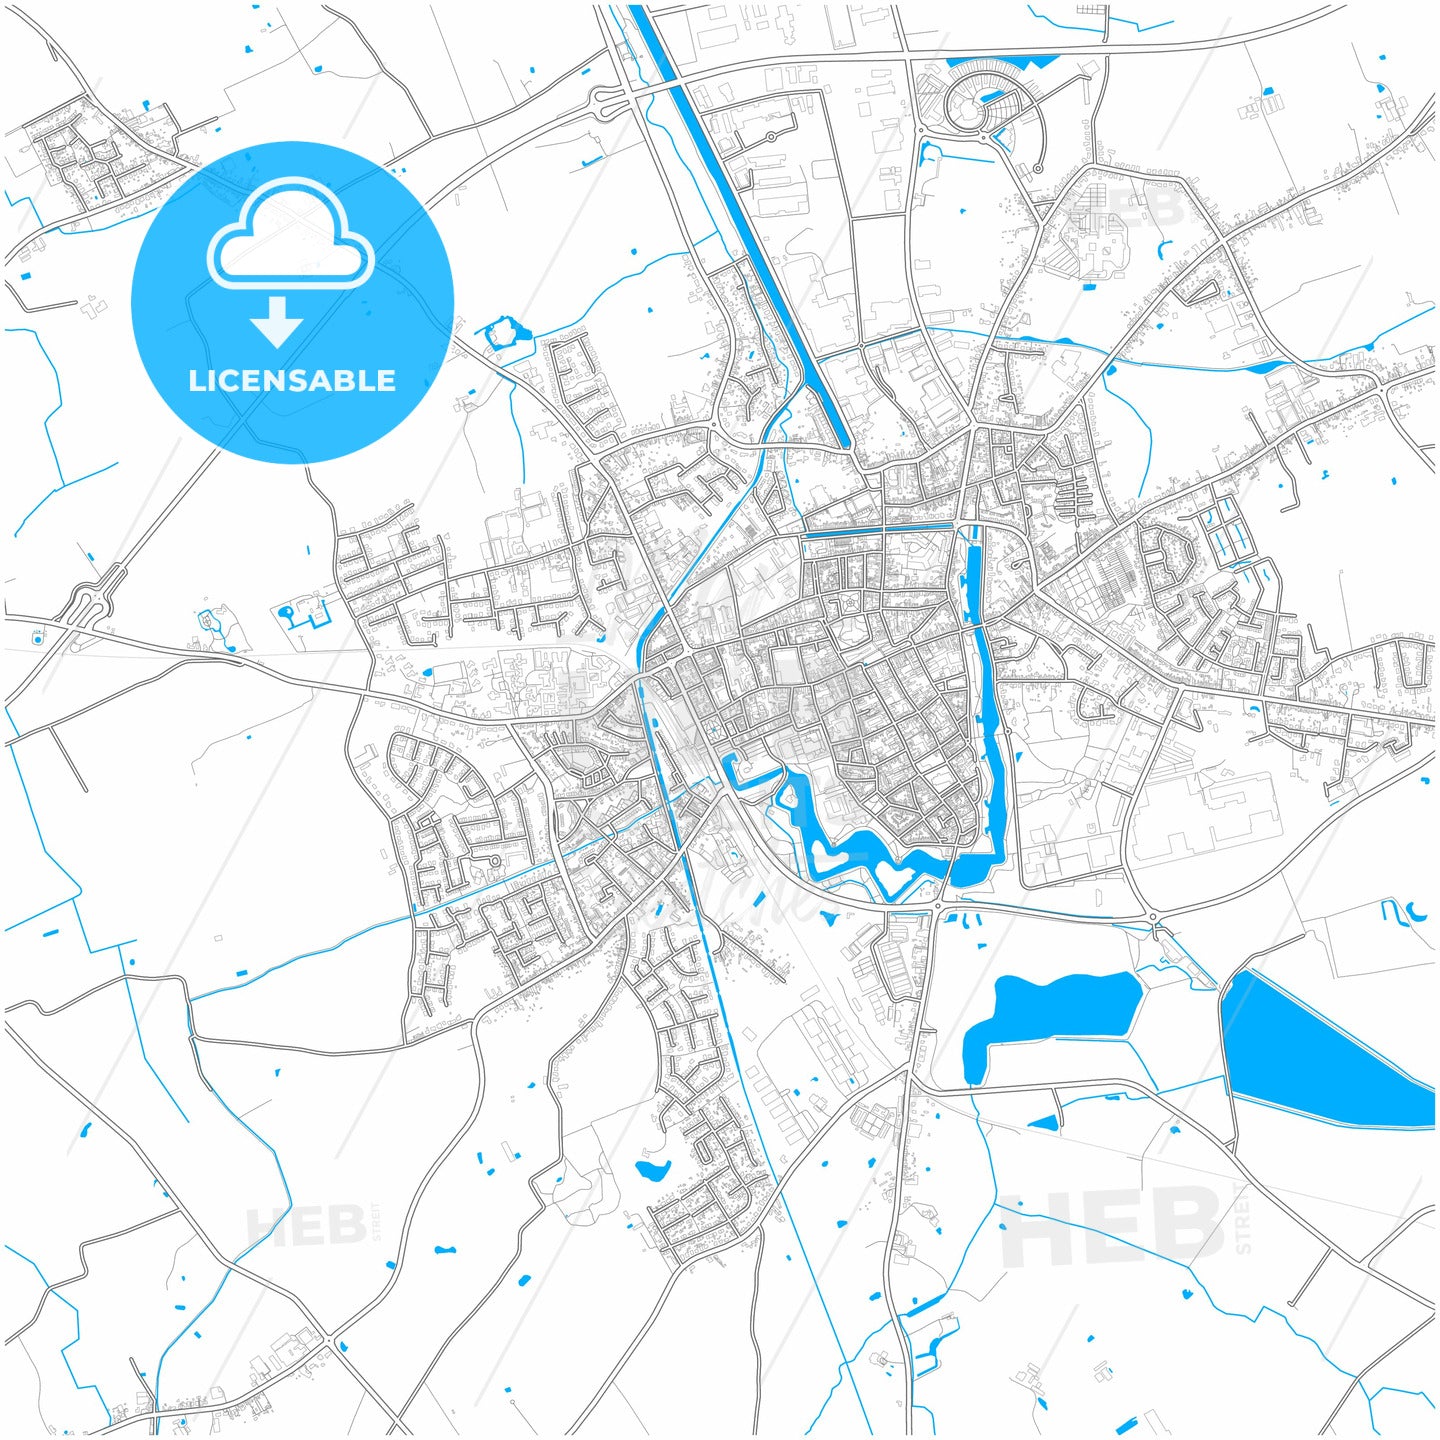 belgium city map